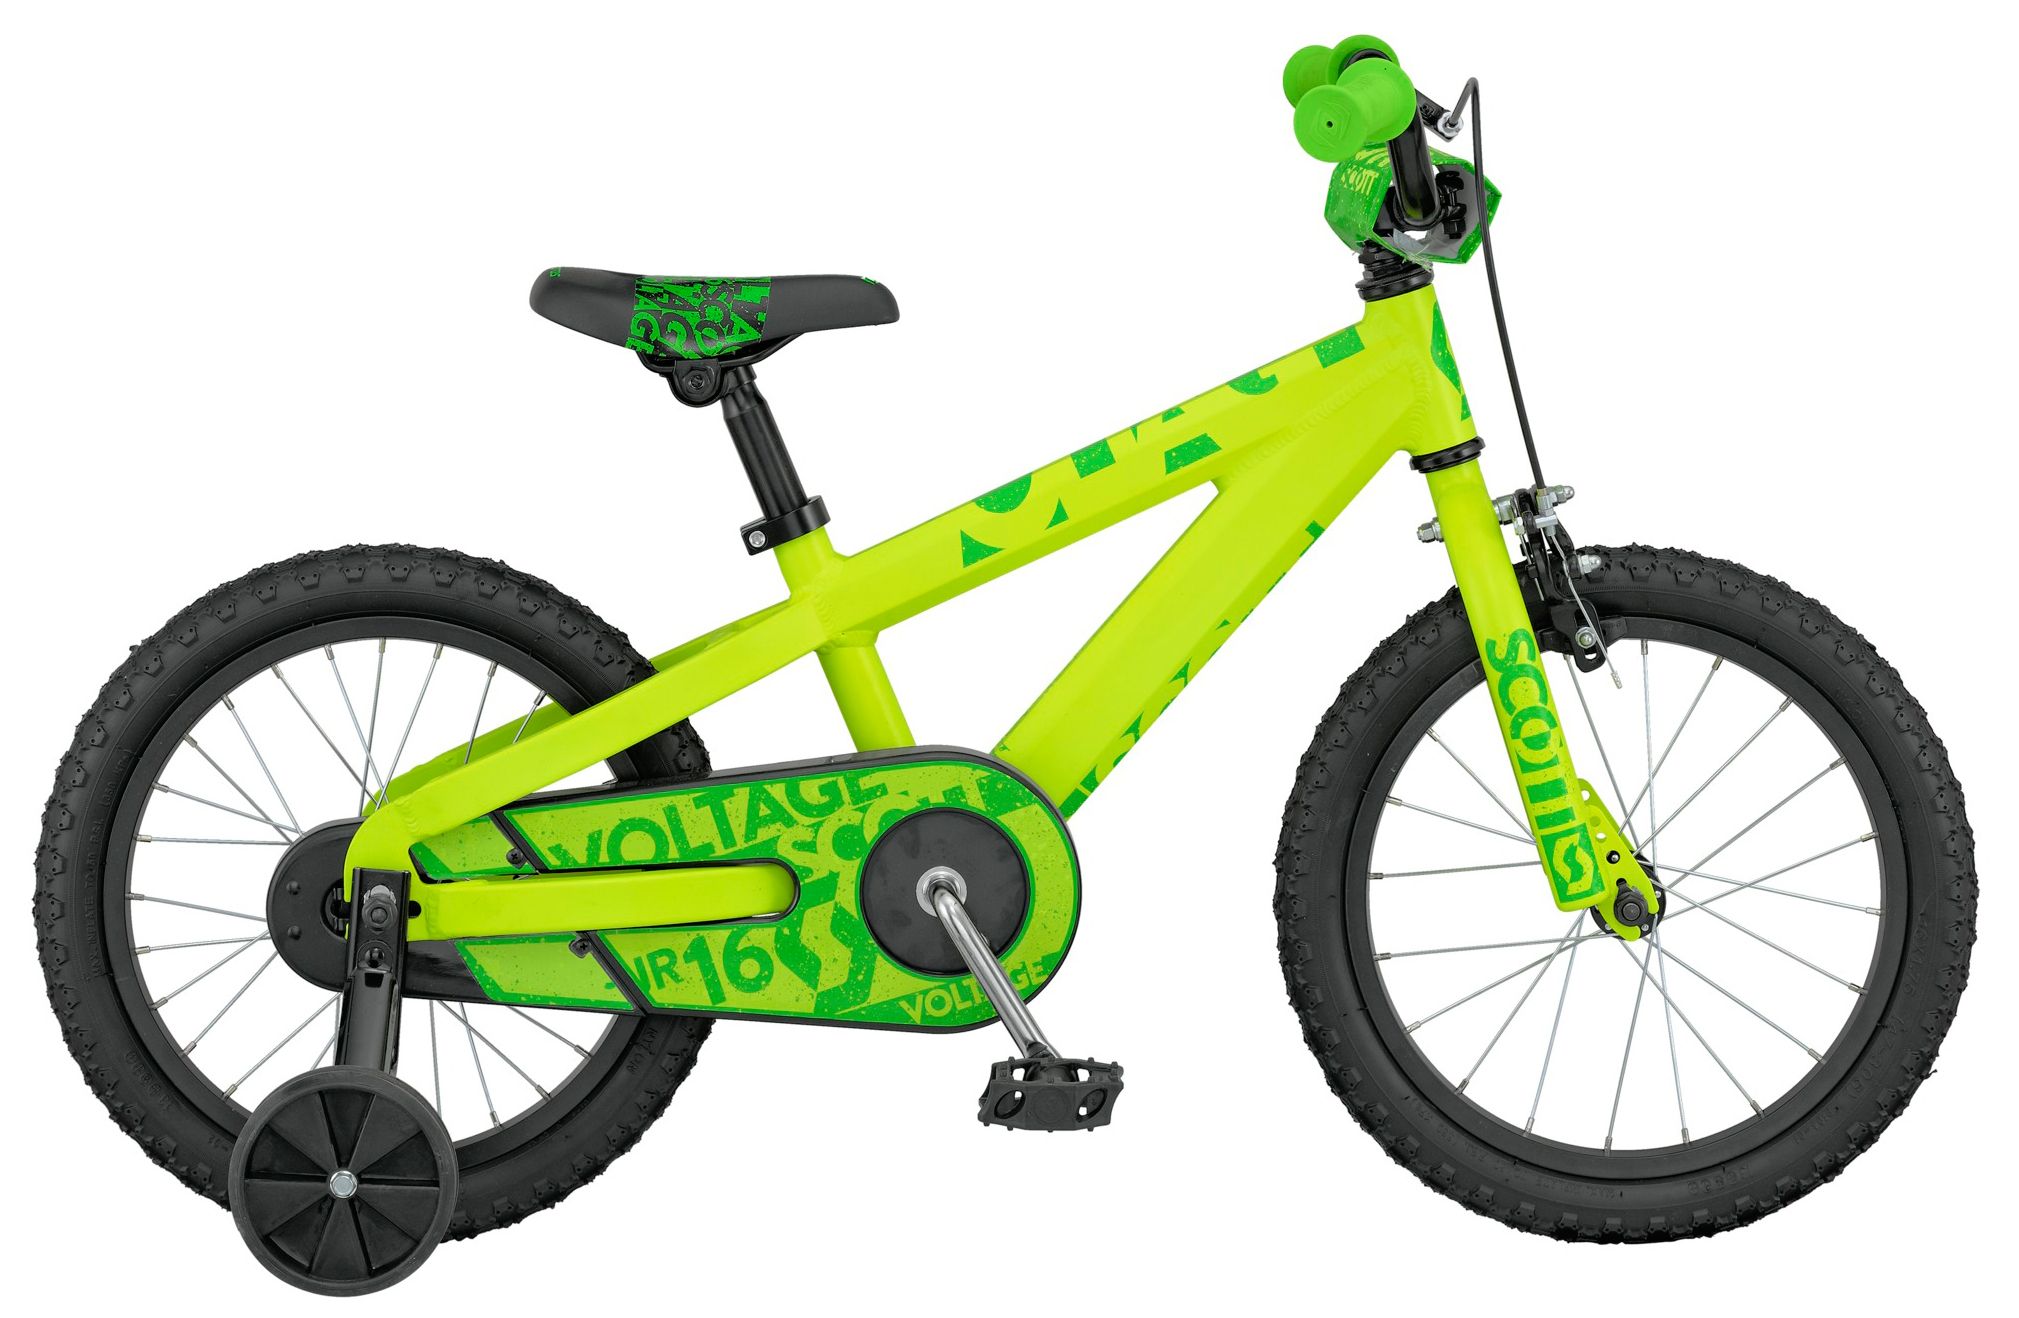  Отзывы о Детском велосипеде Scott Voltage Junior 16 2016